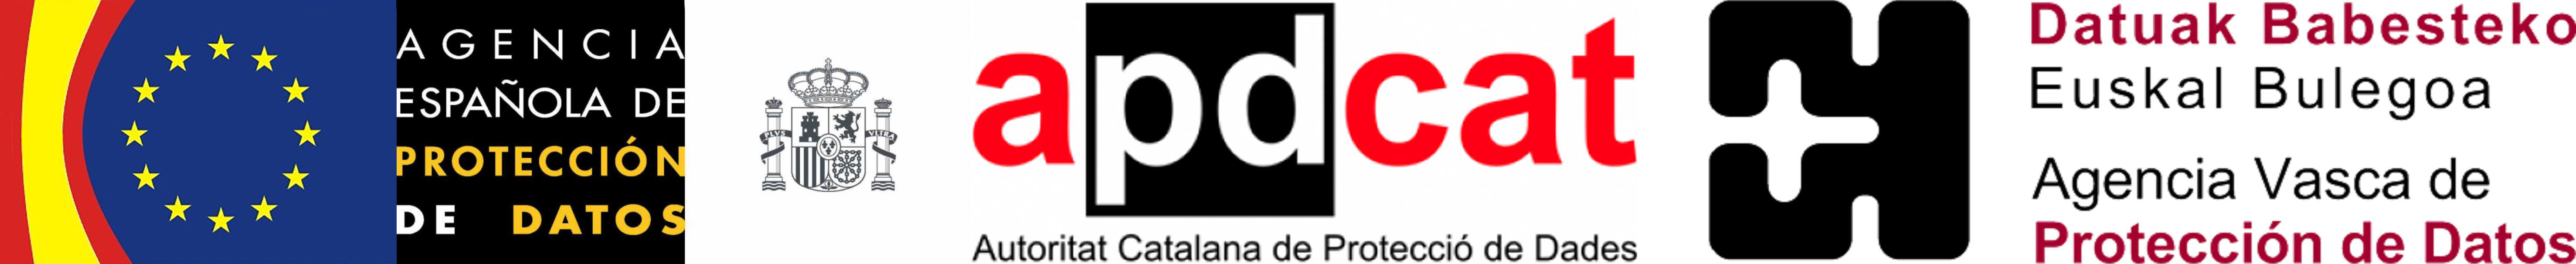 Ikirango Ikigo cya Espagne gishinzwe kurinda amakuru, Autoritat Catalana de Protecció de Dades na Datuak Babesteko Euskal Bulegoa